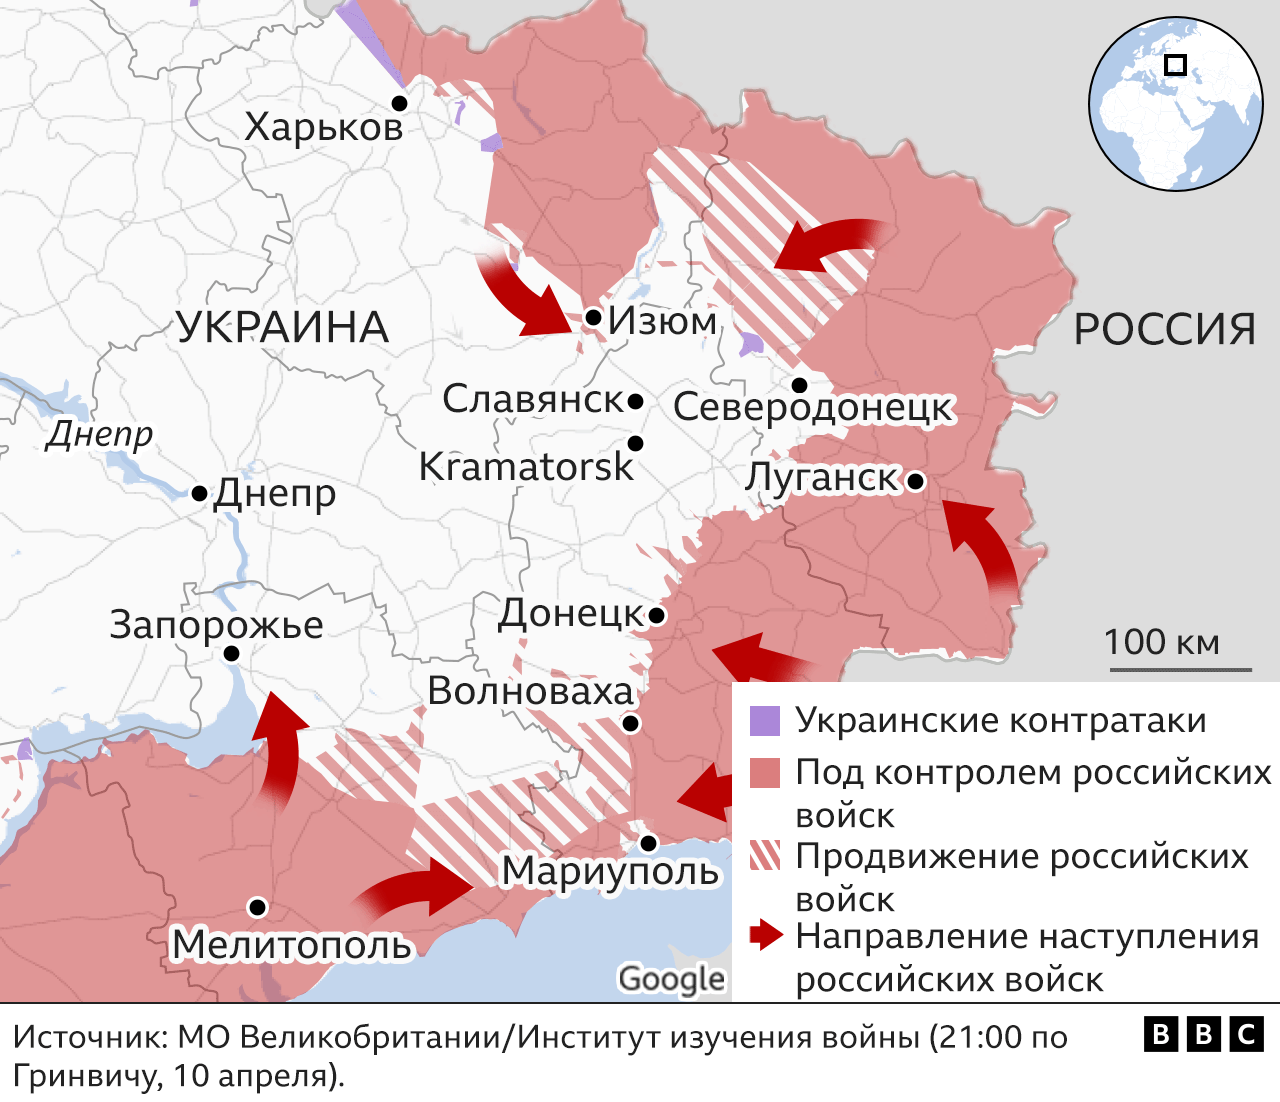 Восточный фронт: как будет развиваться российское наступление в Донбассе? -SOVA